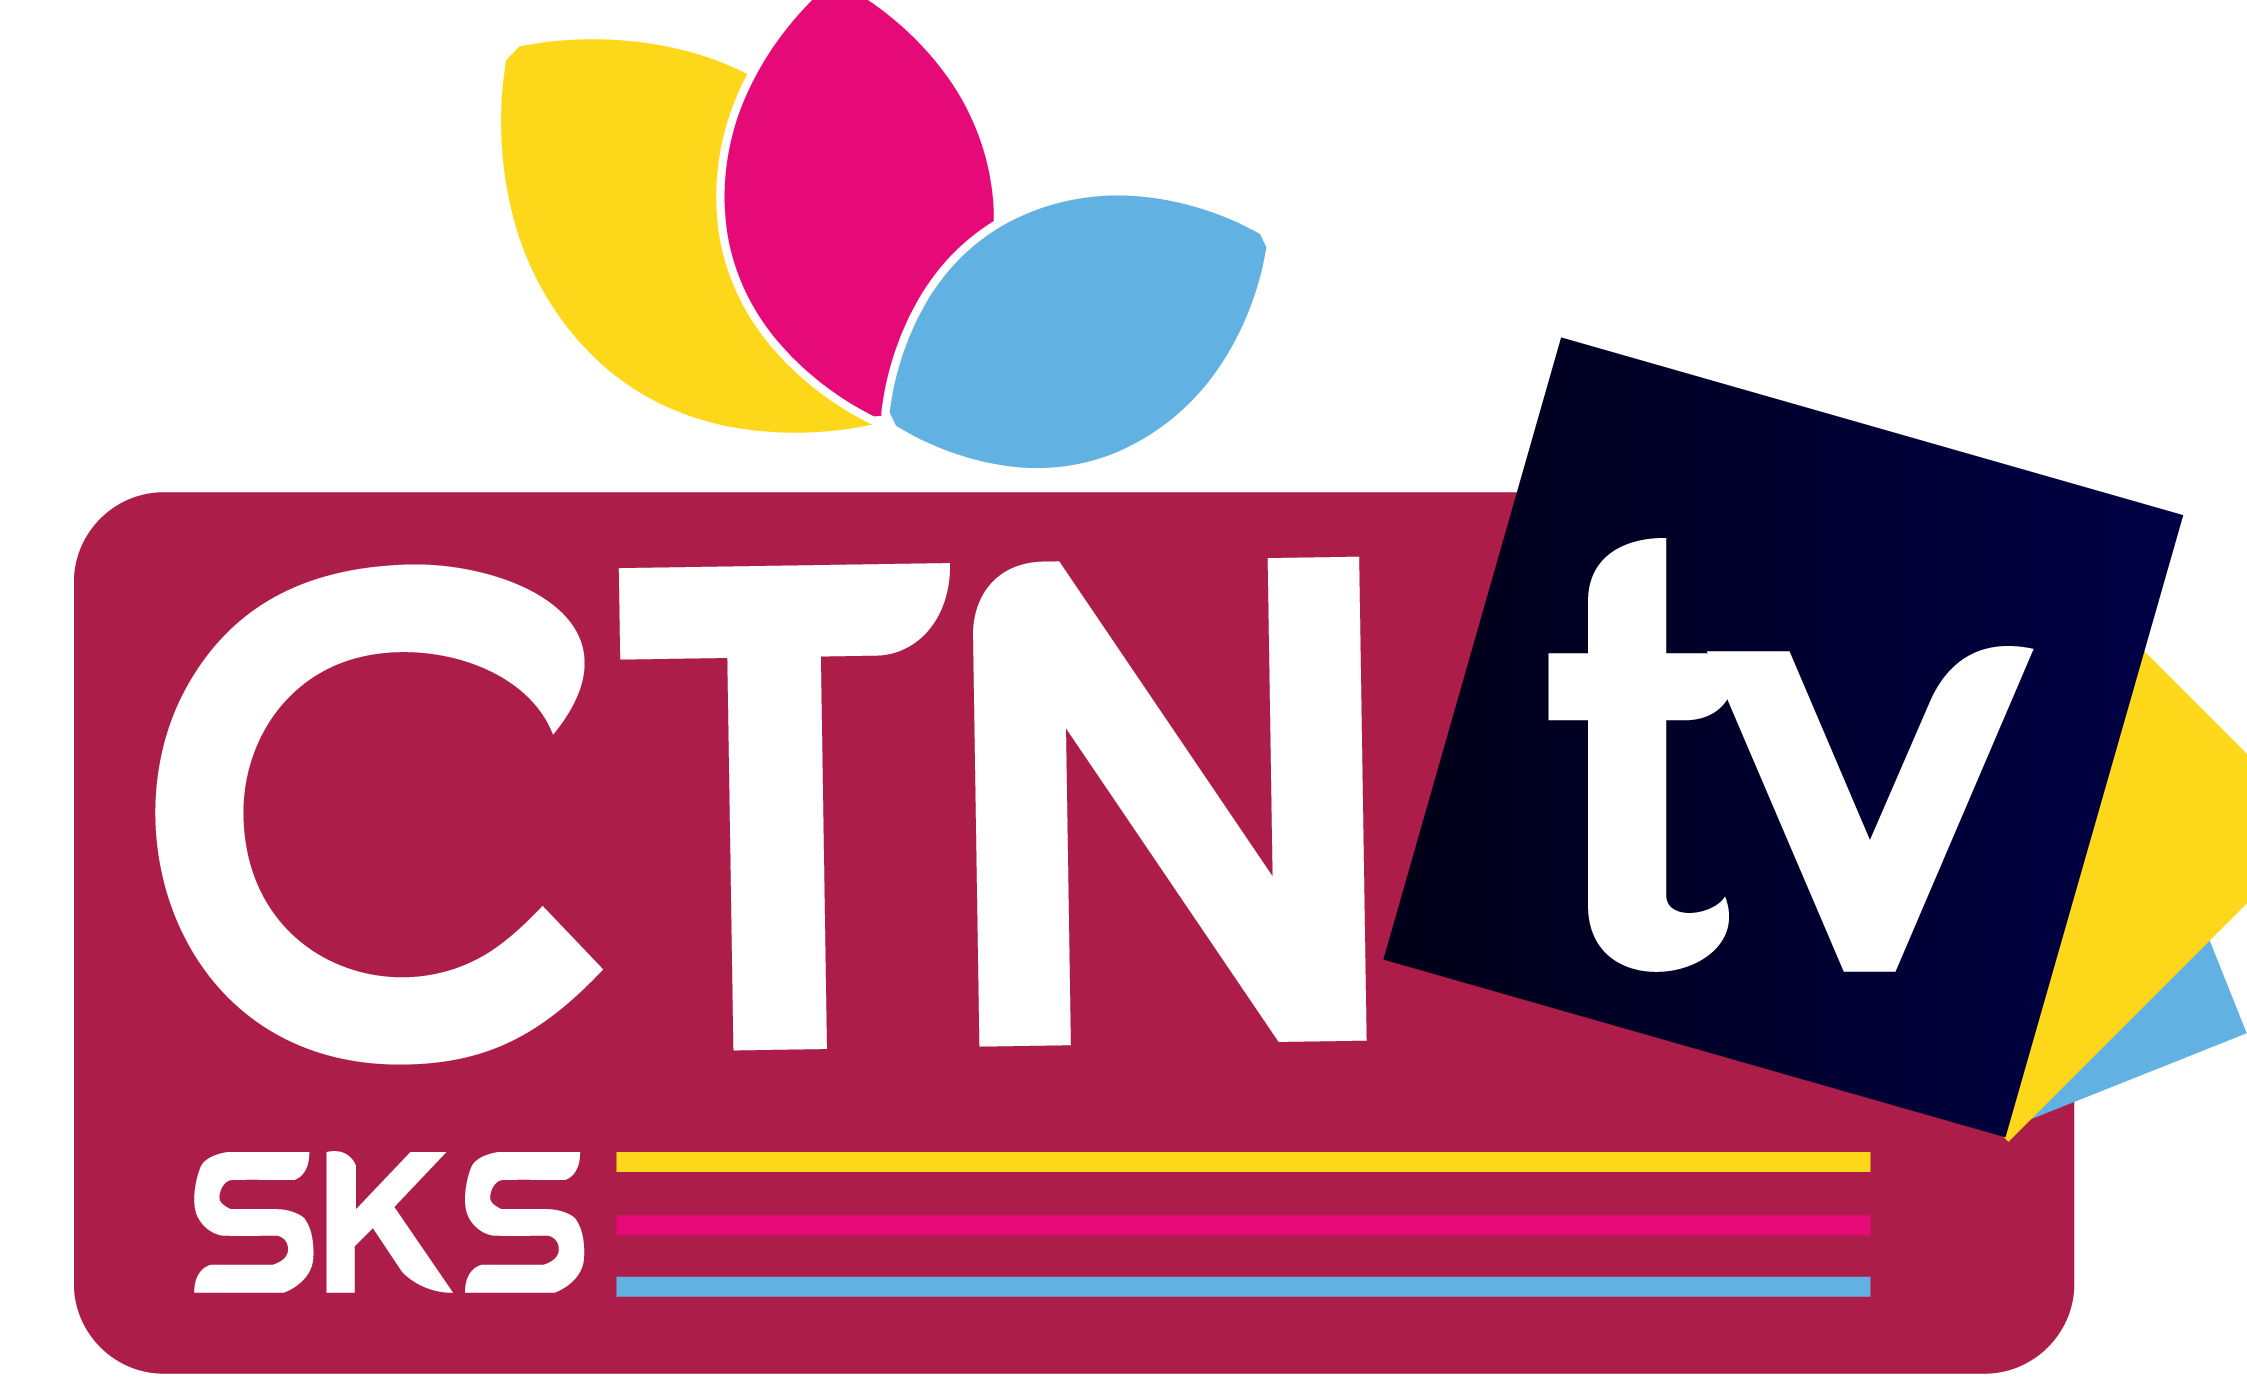 CTN Logo - CTN TV